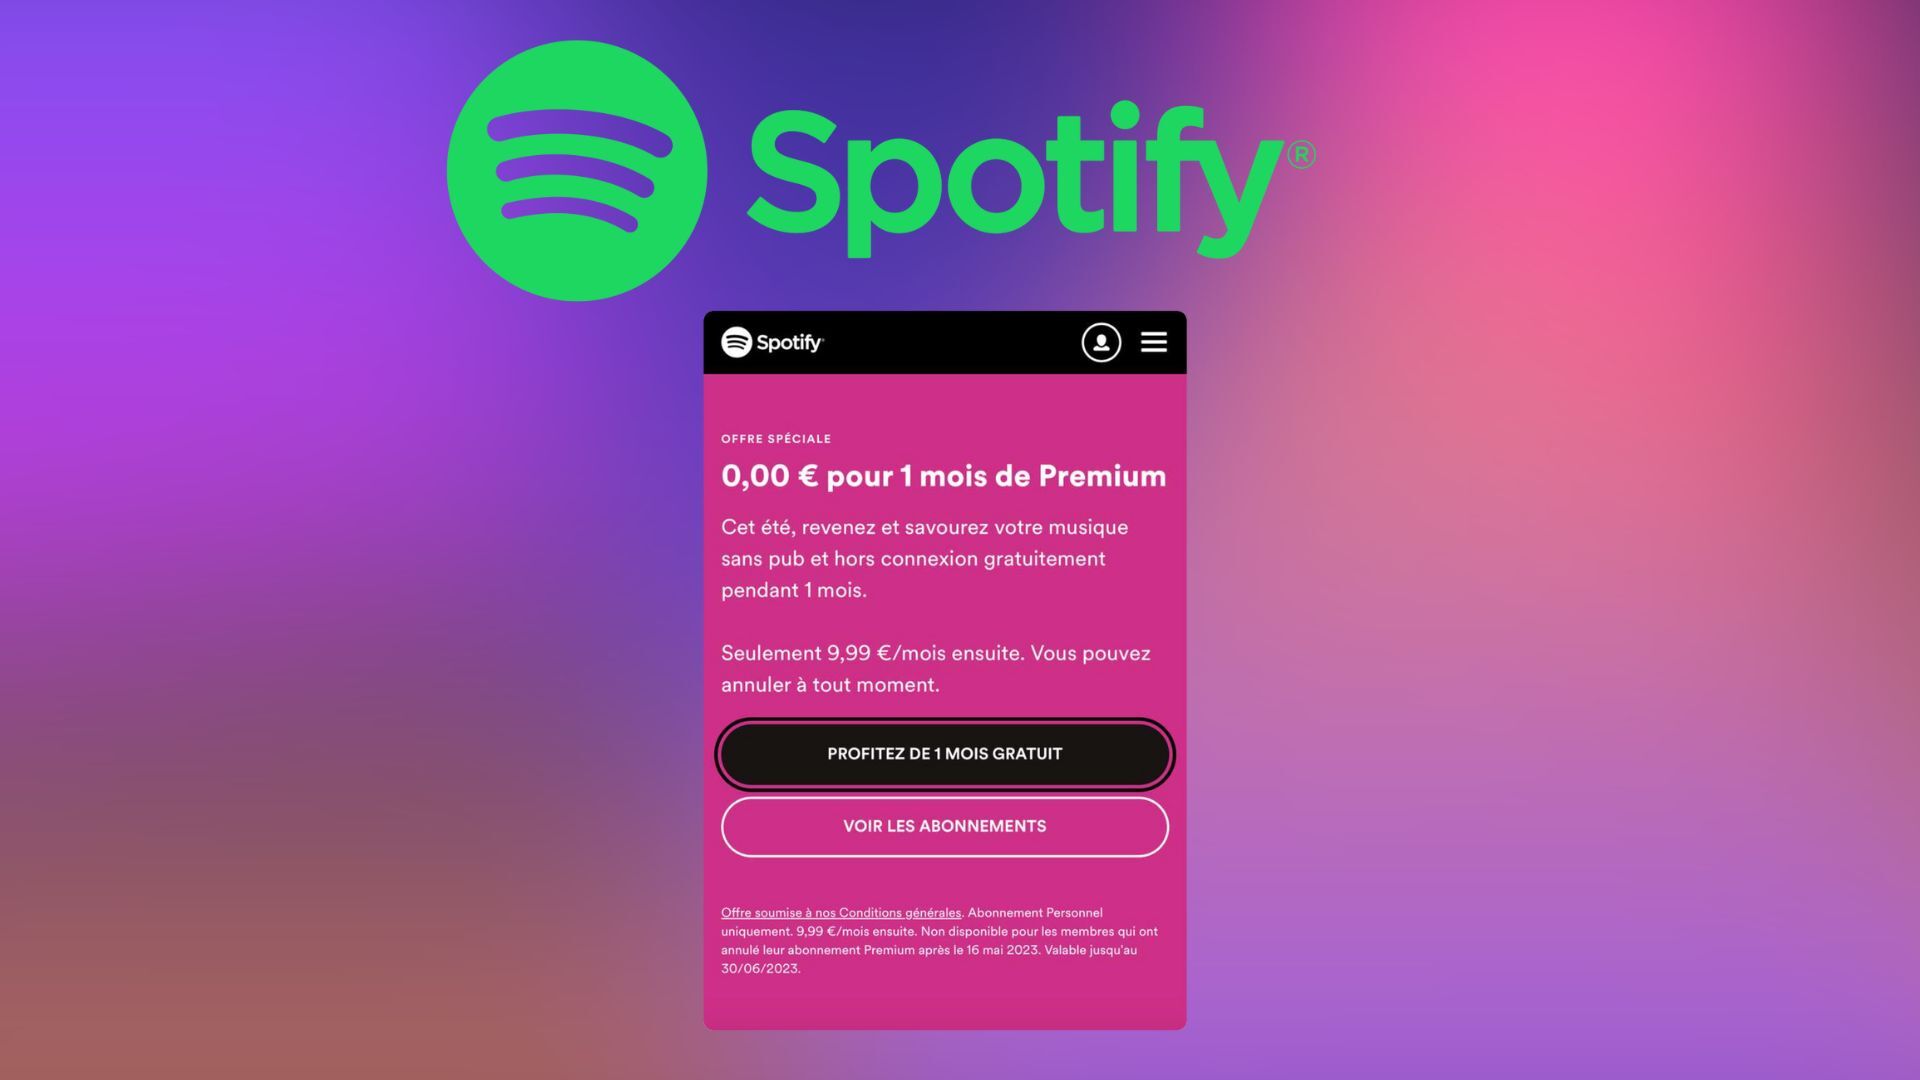 Spotify ofrece 1 mes gratis para su suscripción premium para miembros antiguos